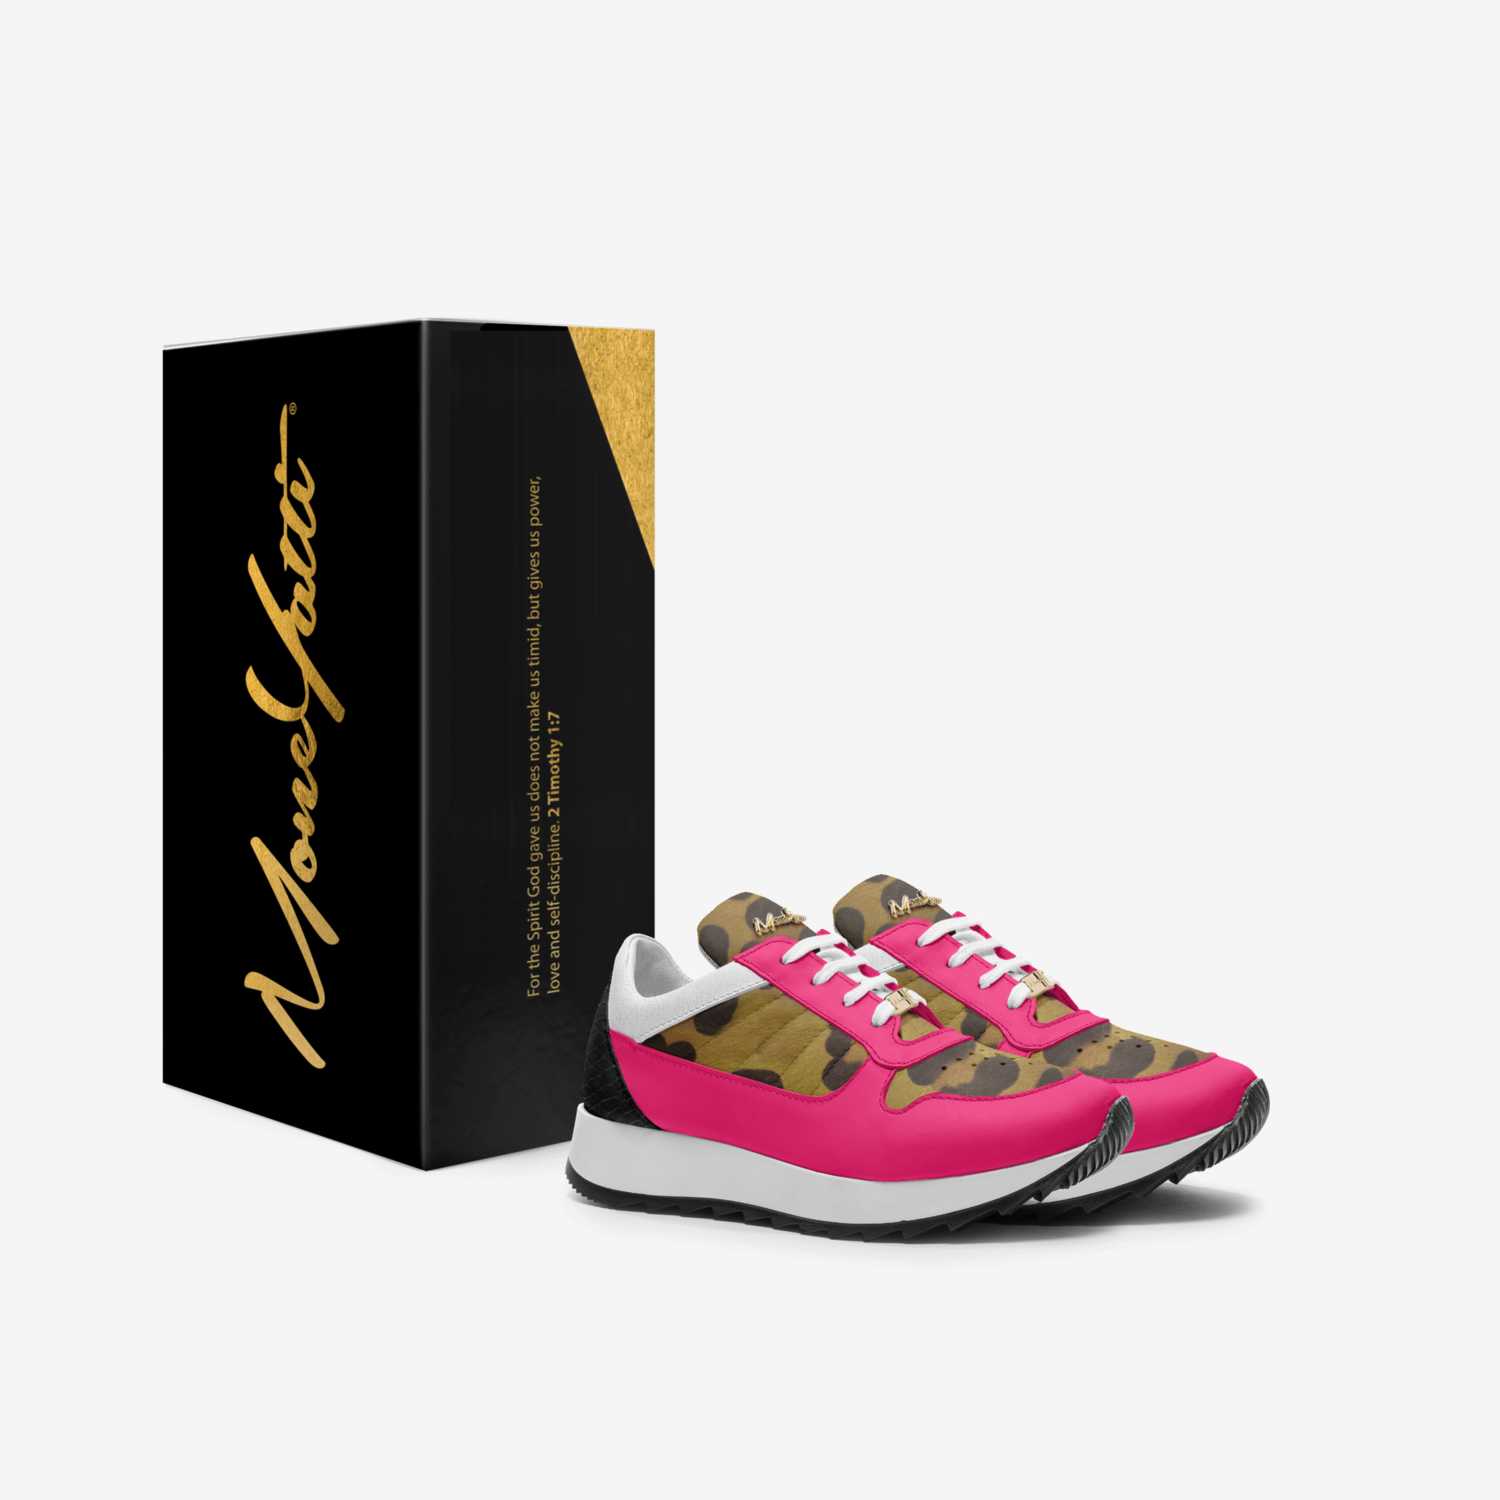 Moneyatti KidLw03 custom made in Italy shoes by Moneyatti Brand | Box view